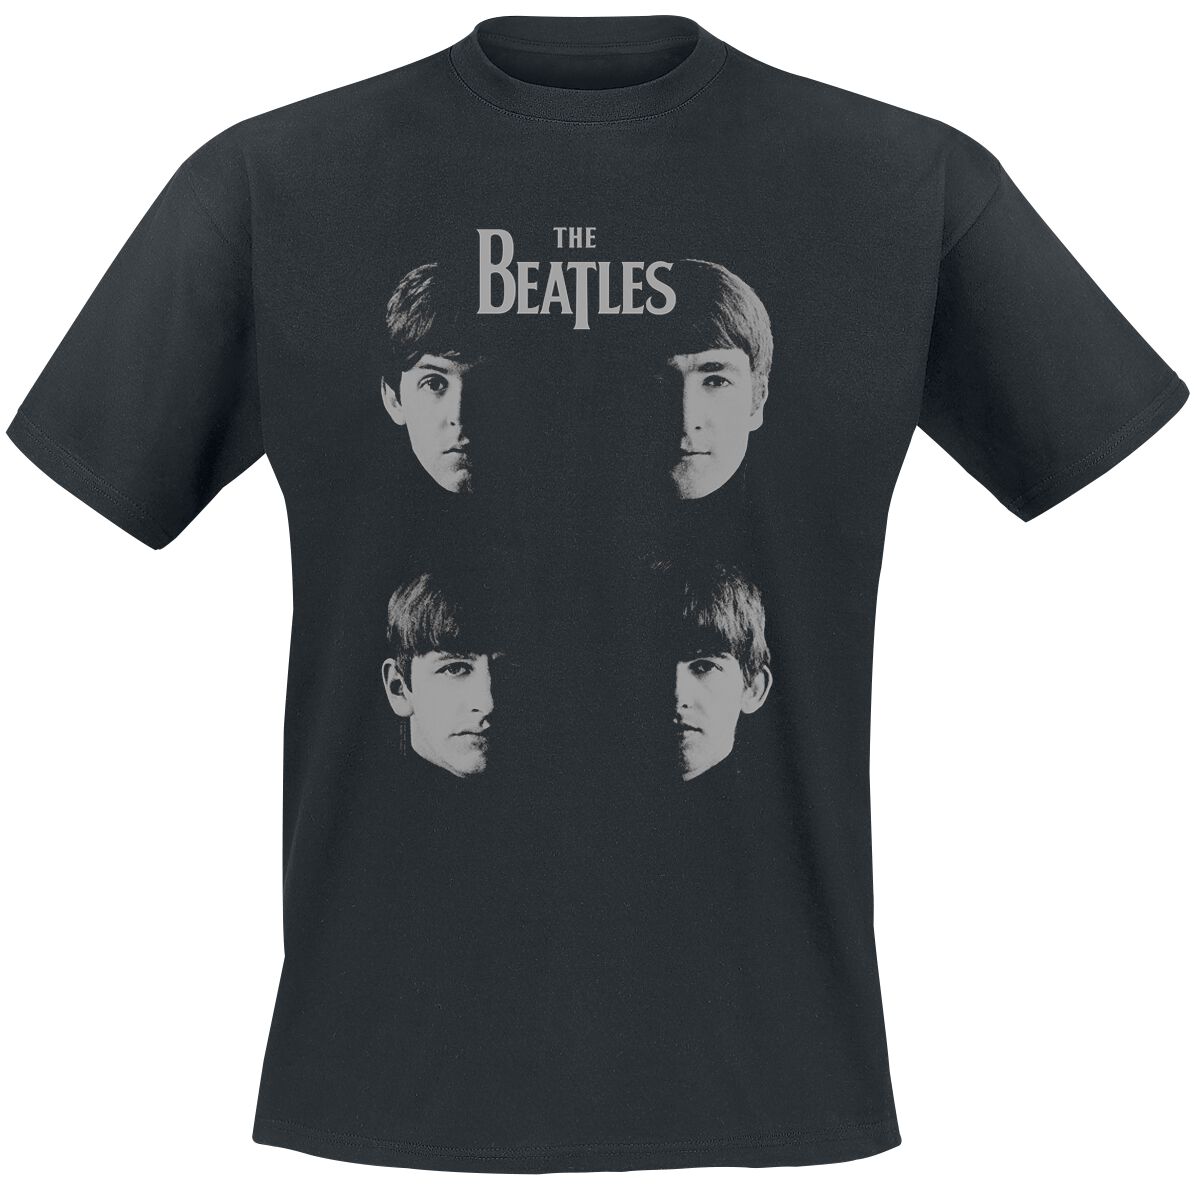 The Beatles T-Shirt - Shadow Faces - S bis 3XL - für Männer - Größe 3XL - schwarz  - Lizenziertes Merchandise!